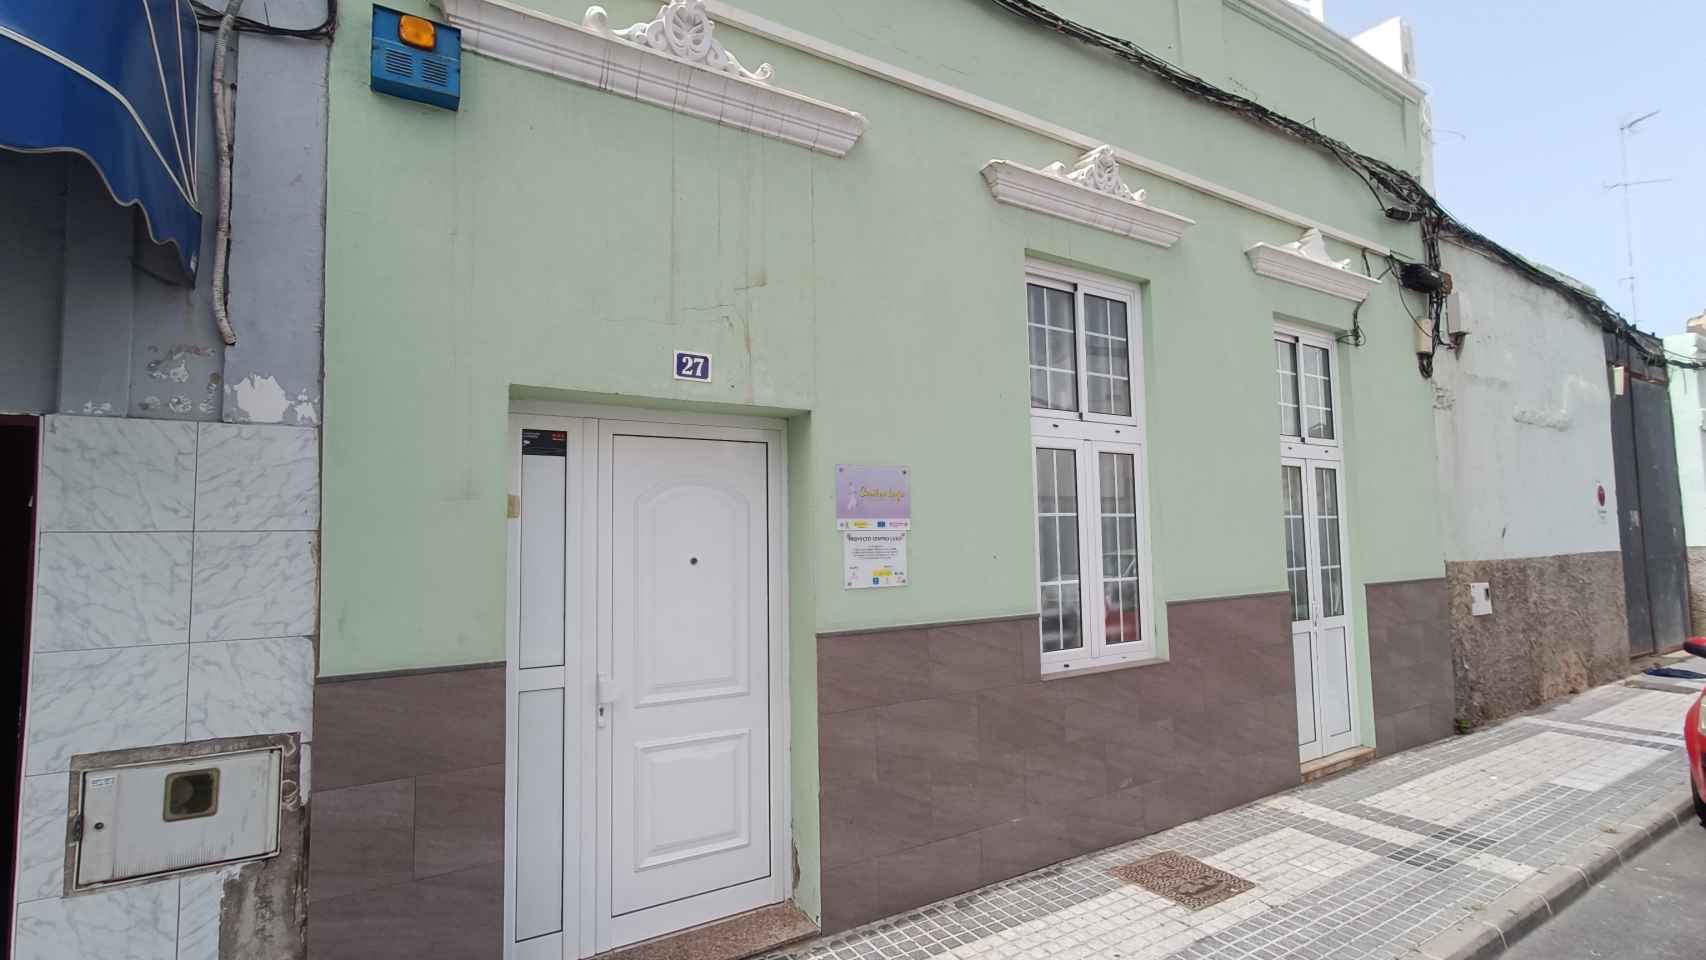 La puerta, que siempre está sonando, del Centro Lugo de Cáritas Canarias, que cuenta con el apoyo de Fundación Mutua Madrileña.